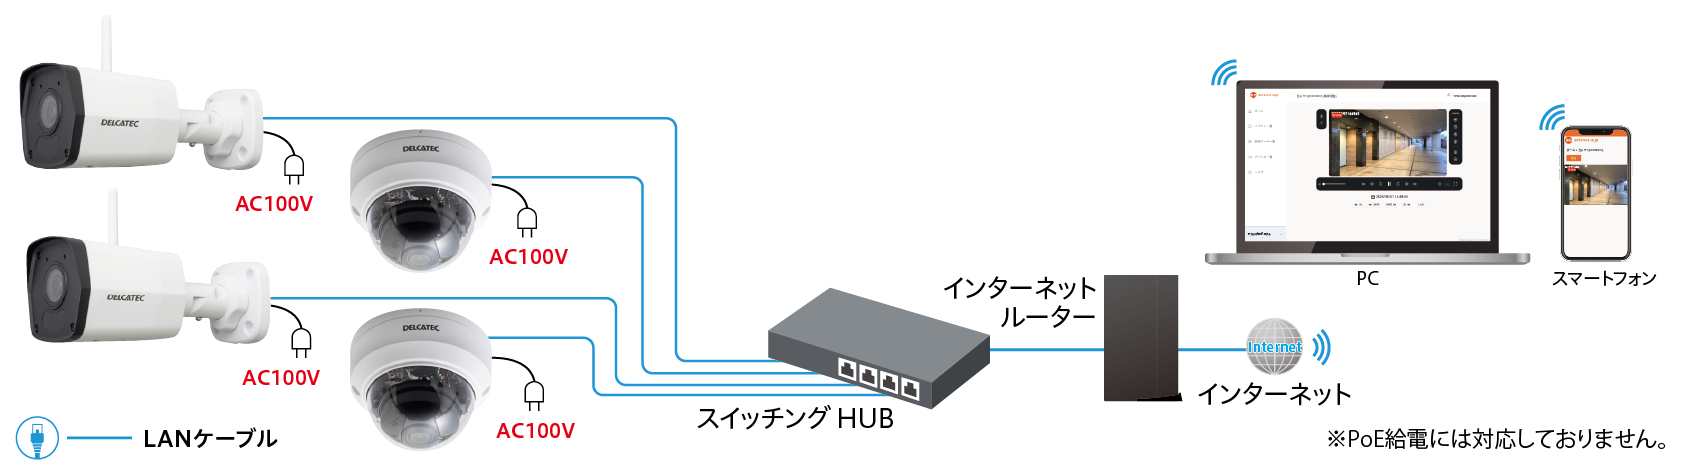 有線LAN接続のシステム構成例